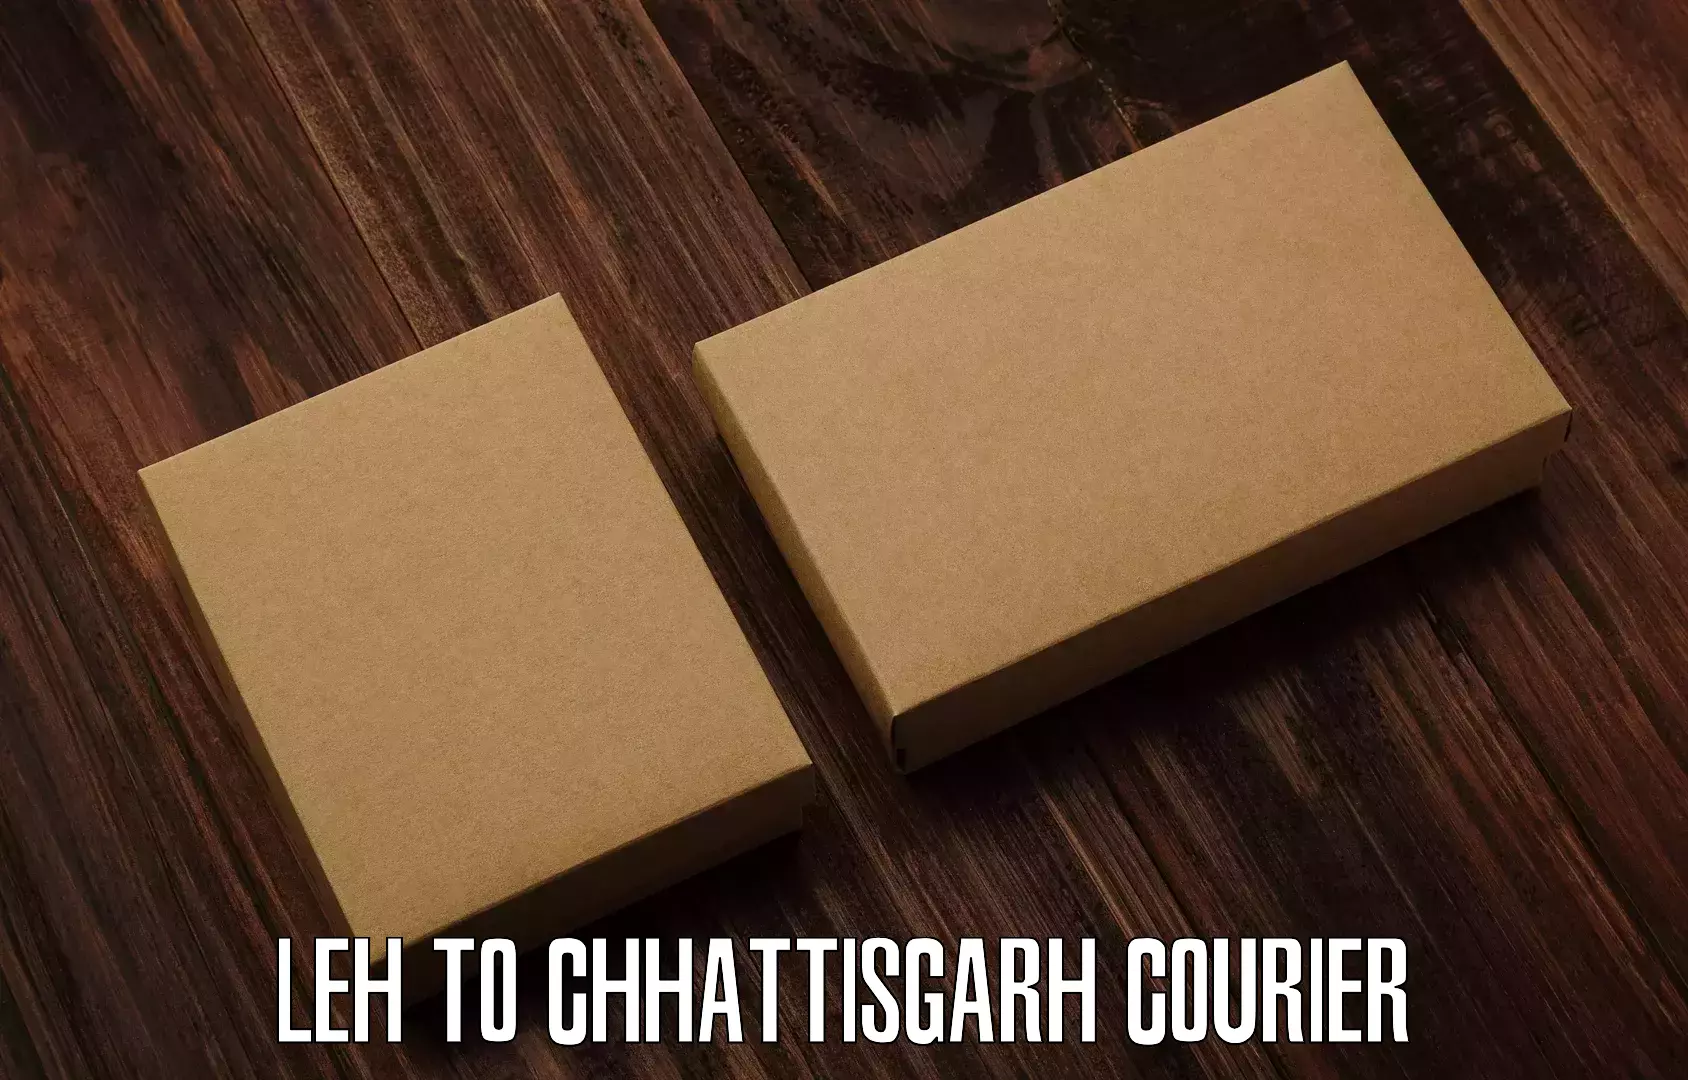 Multi-service courier options Leh to Chhattisgarh